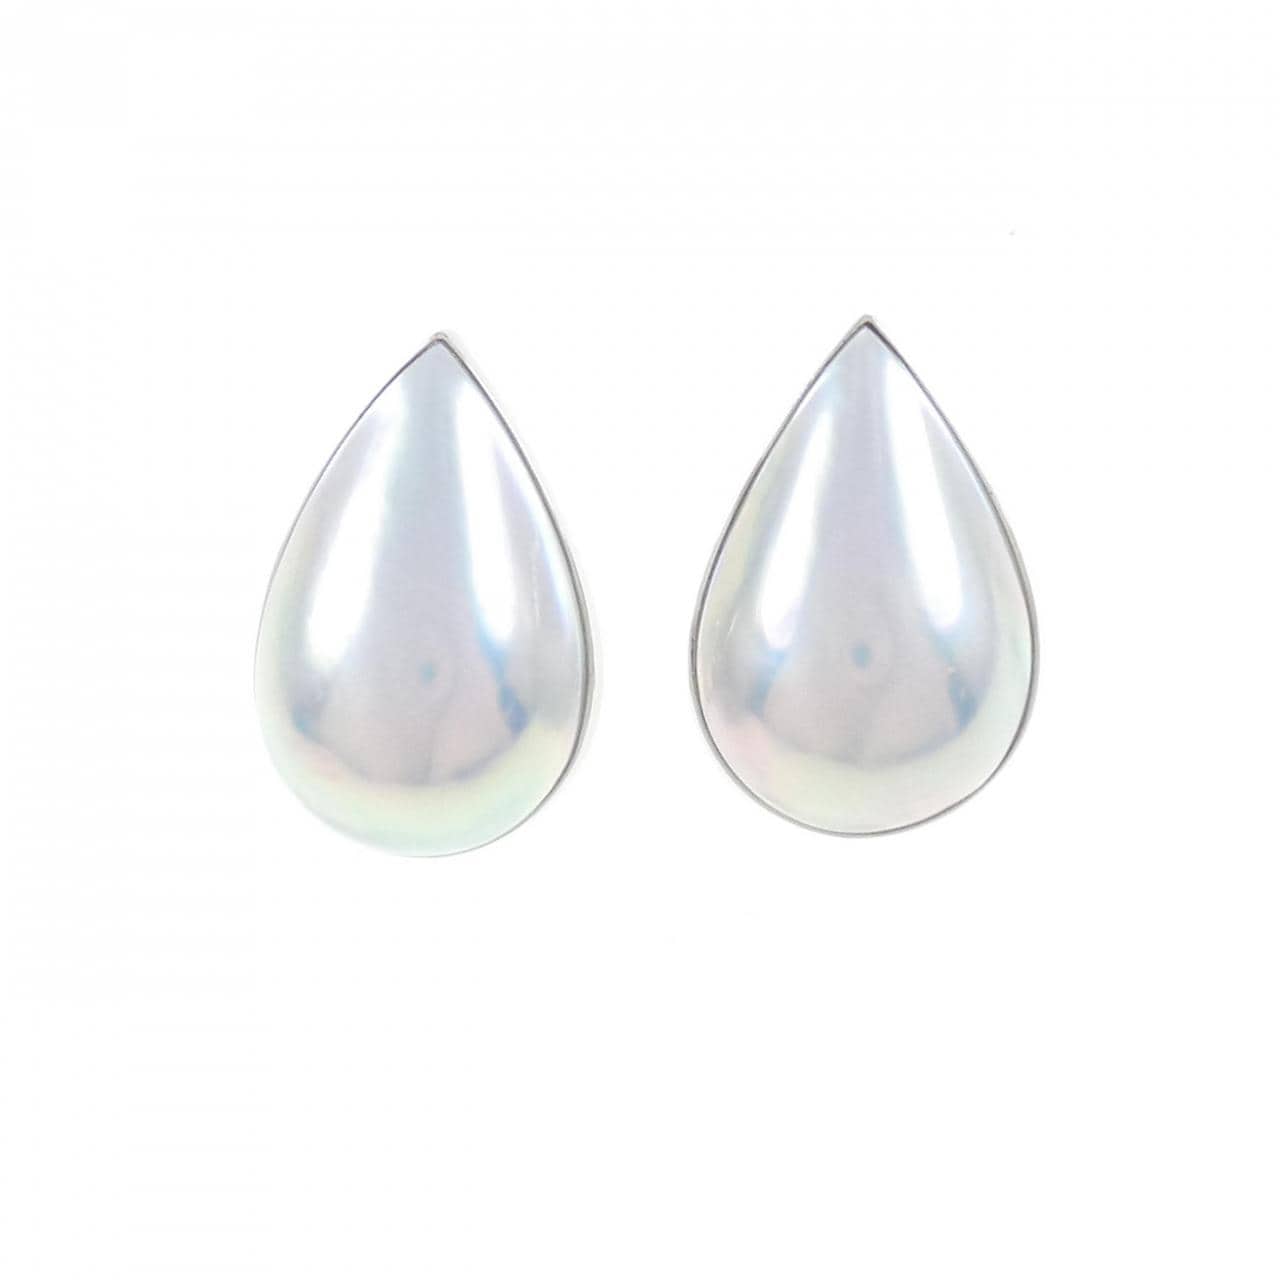 K18WG Mabe pearl earrings